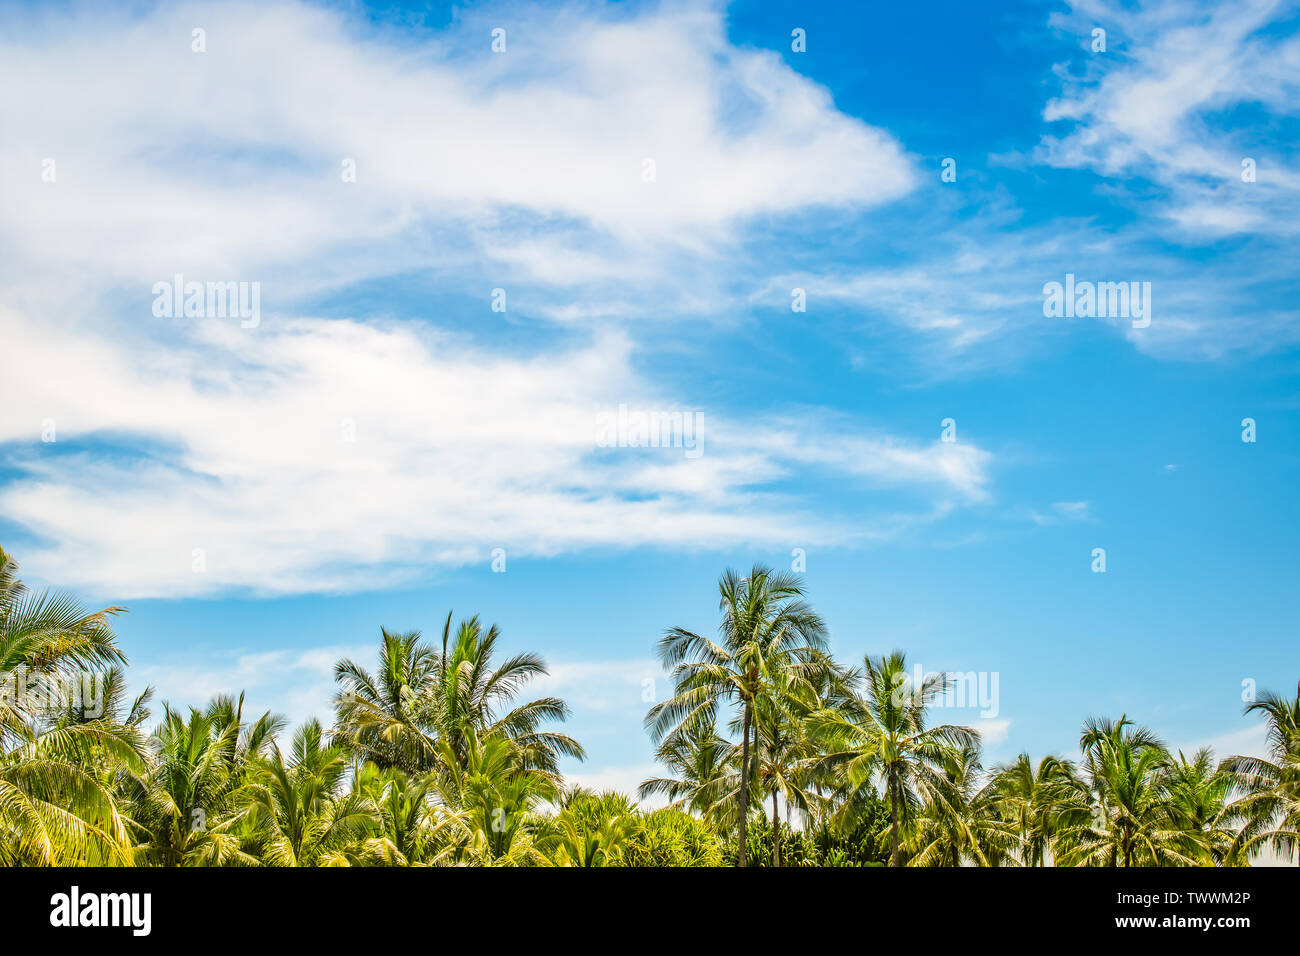 Fondo de verano playa tropical con palmeras de coco contra el cielo azul y las nubes blancas. Espacio para el texto. Foto de stock